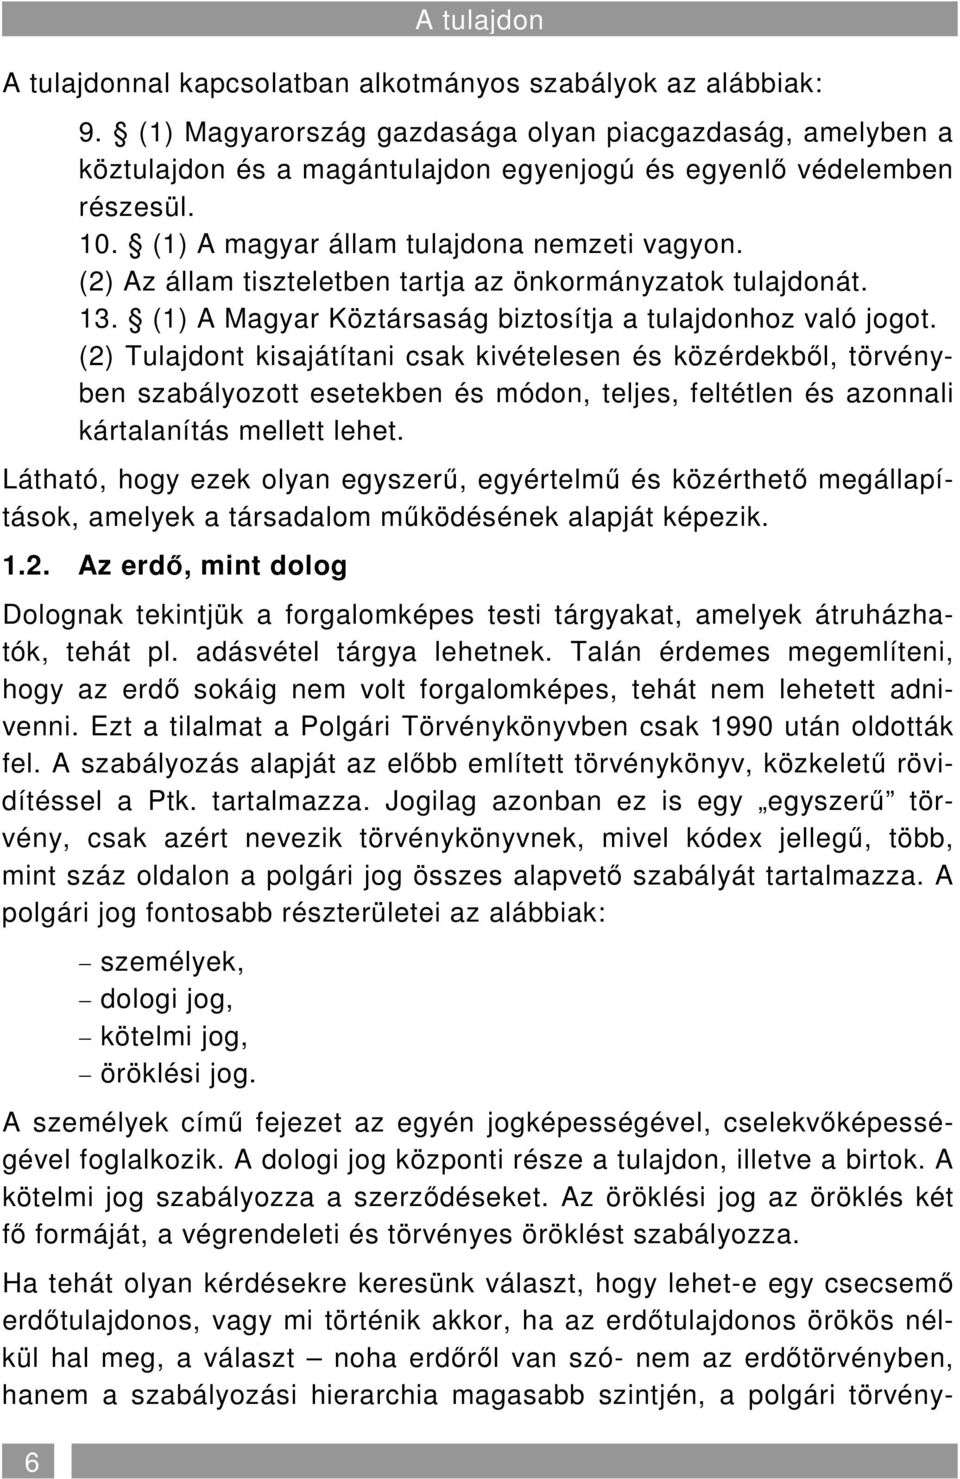 (2) Az állam tiszteletben tartja az önkormányzatok tulajdonát. 13. (1) A Magyar Köztársaság biztosítja a tulajdonhoz való jogot.